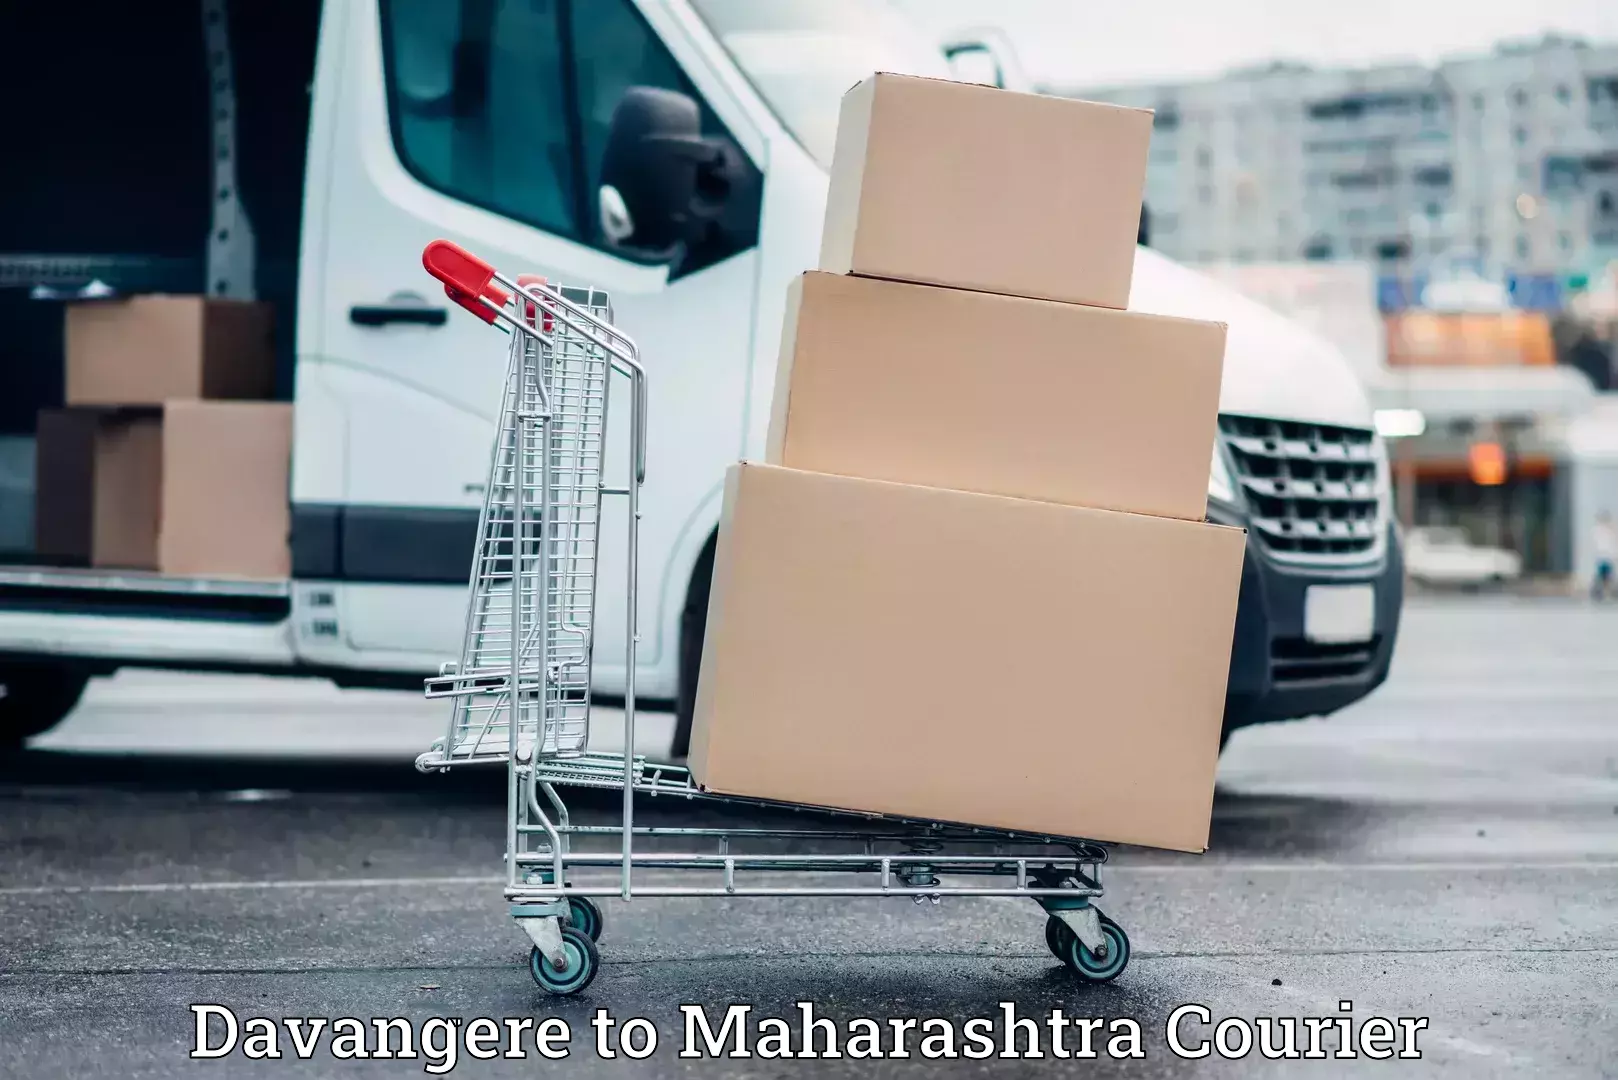 Trusted moving company Davangere to Maharashtra